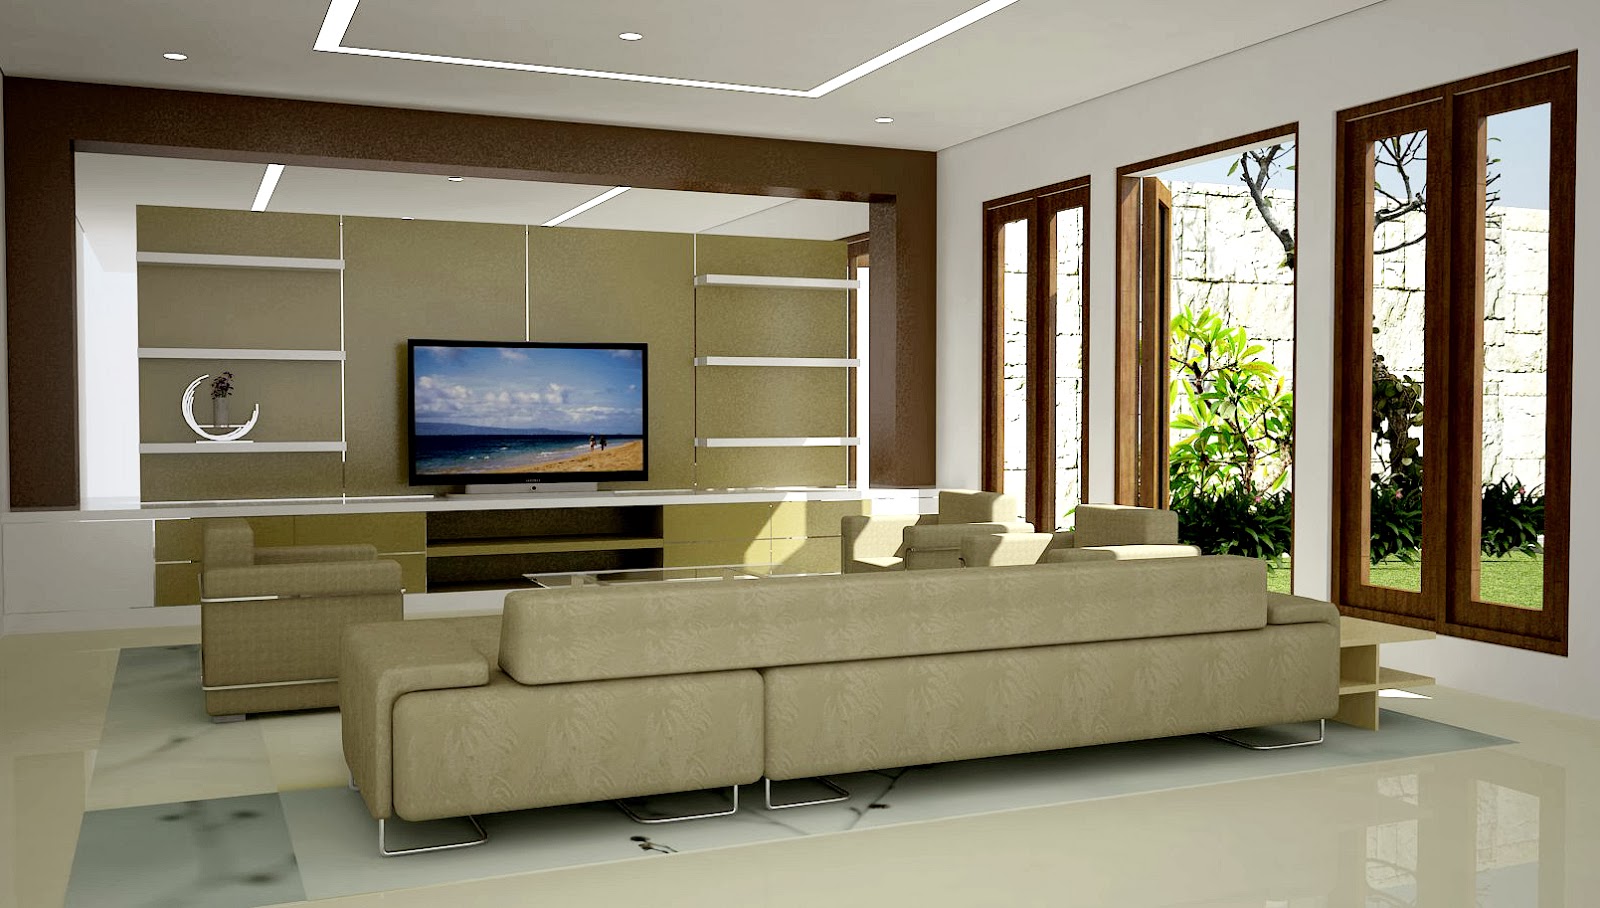 Gambar Desain Interior Rumah Minimalis Modern Home Design 86